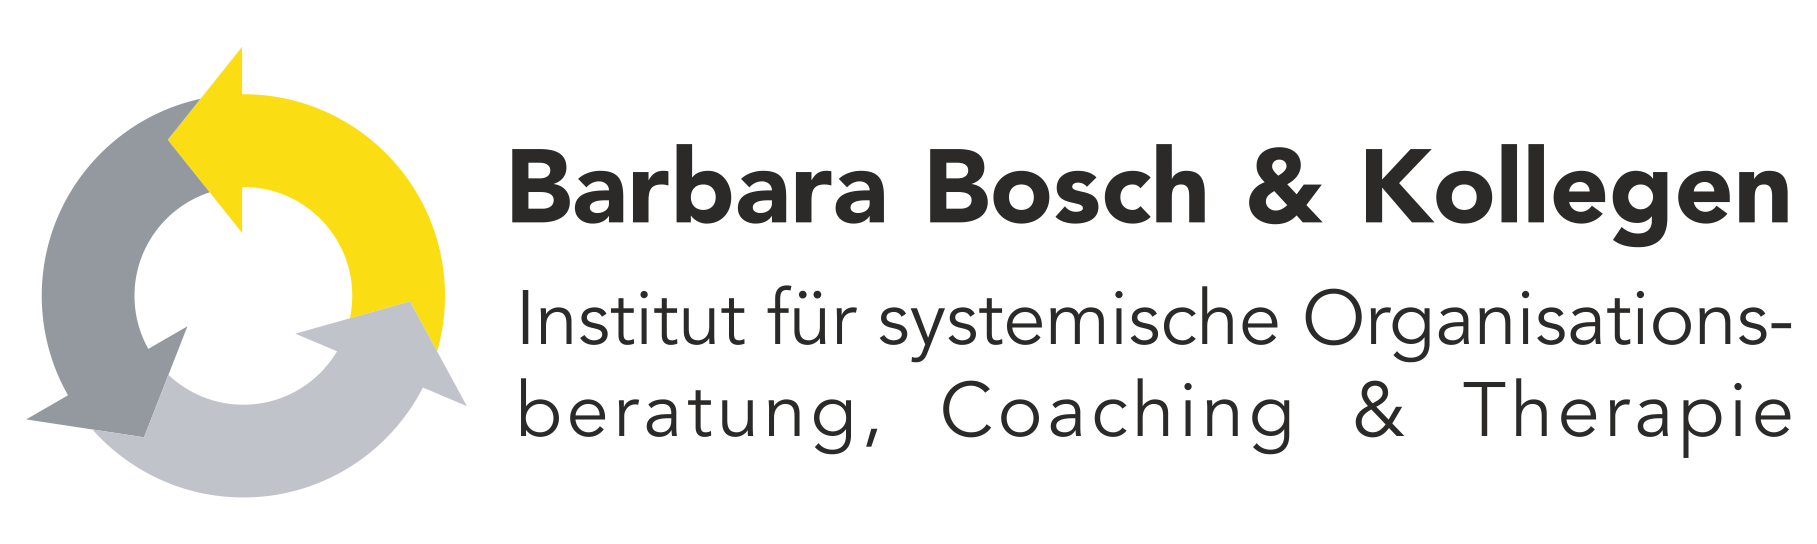 Barbara Bosch & Kollegen